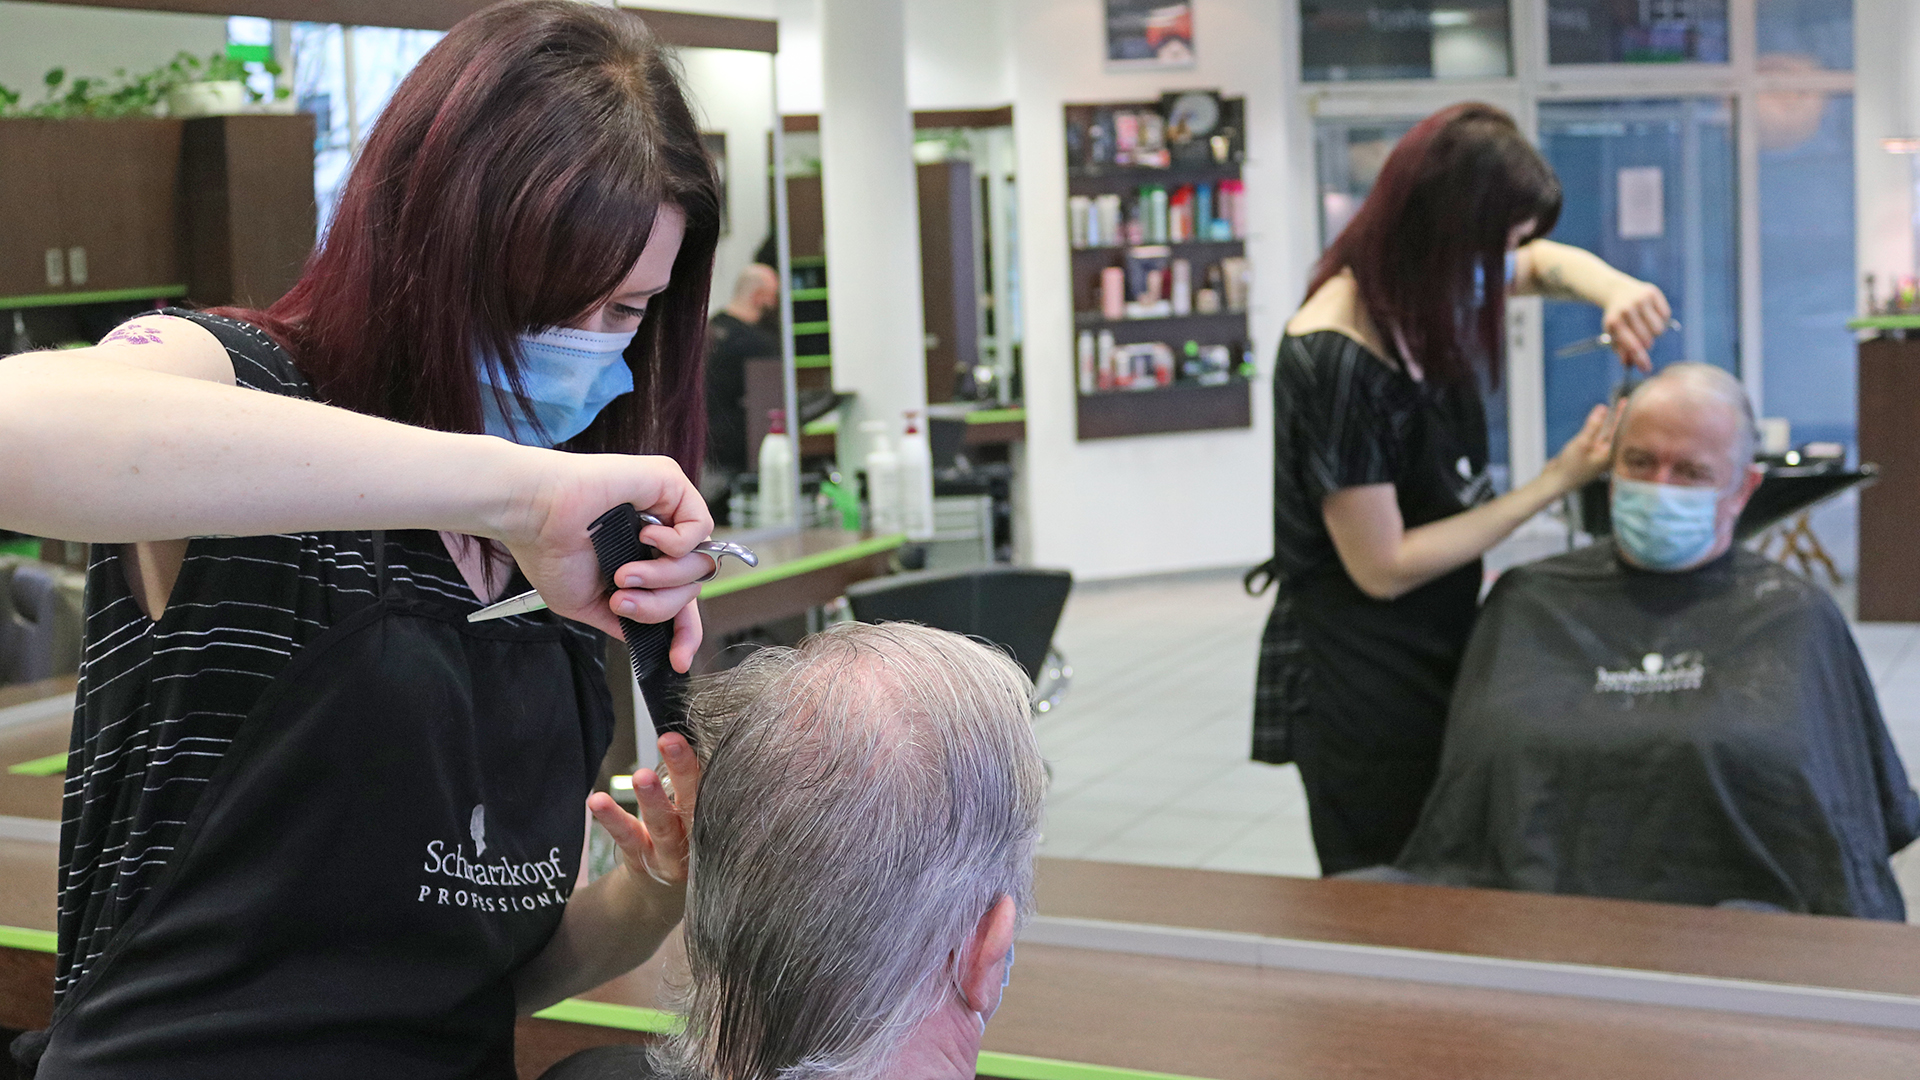 Friseurin schneidet Mann die Haare | Katharina Pritzkow/MDR